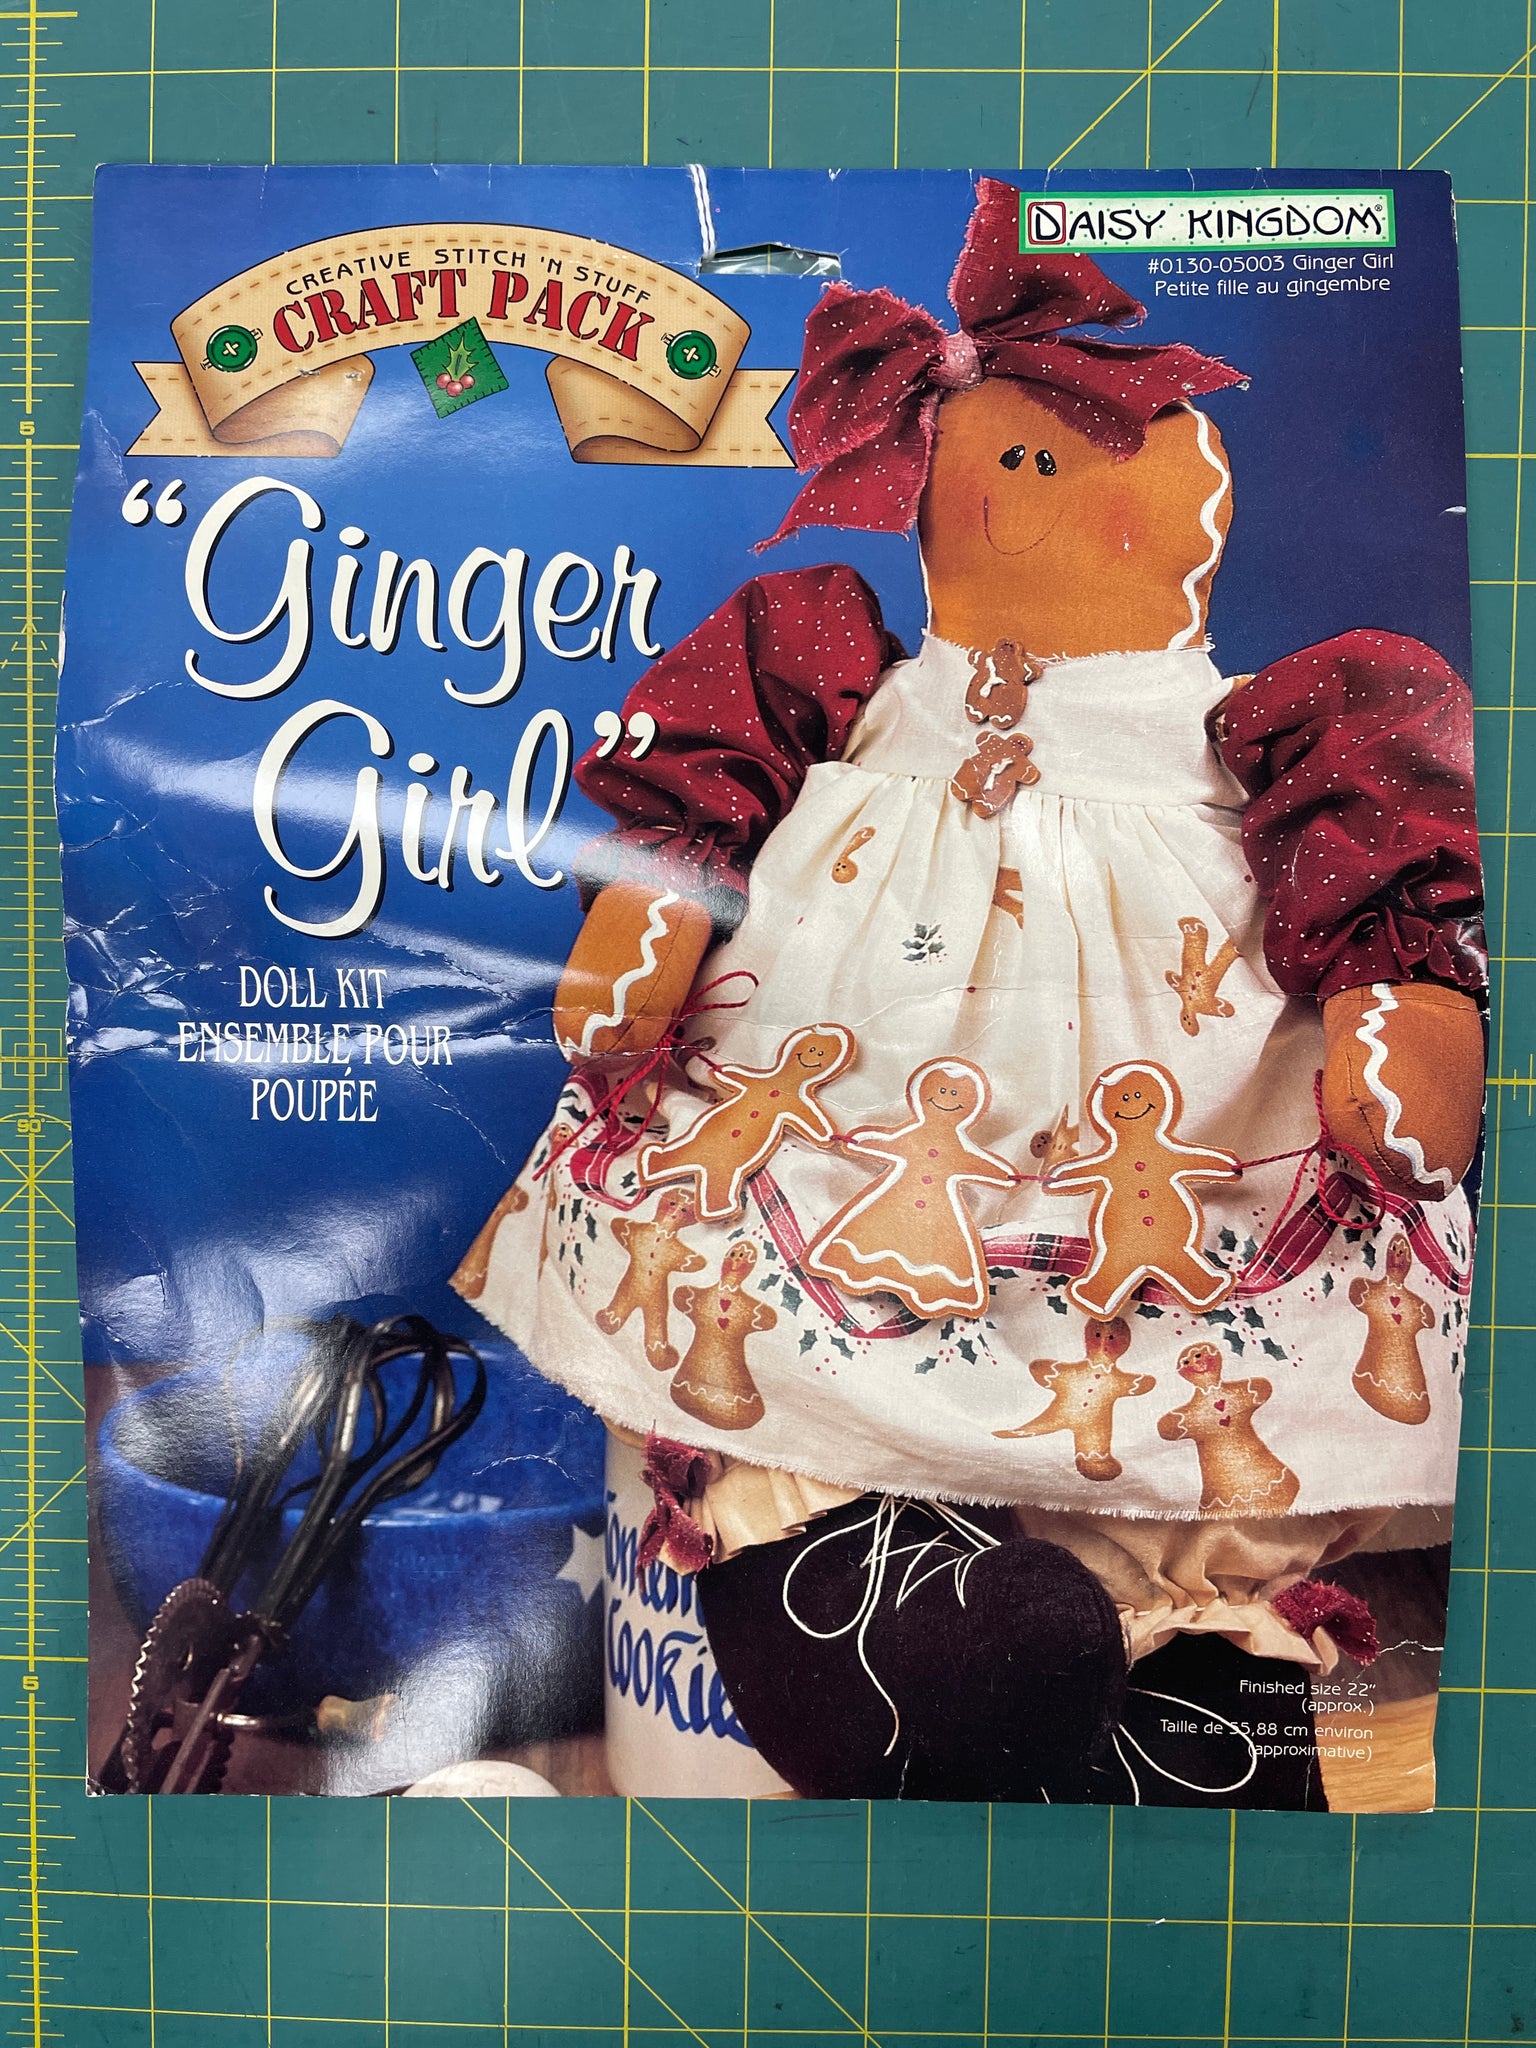 1997 Daisy Kingdom Doll Kit - "Ginger Girl"